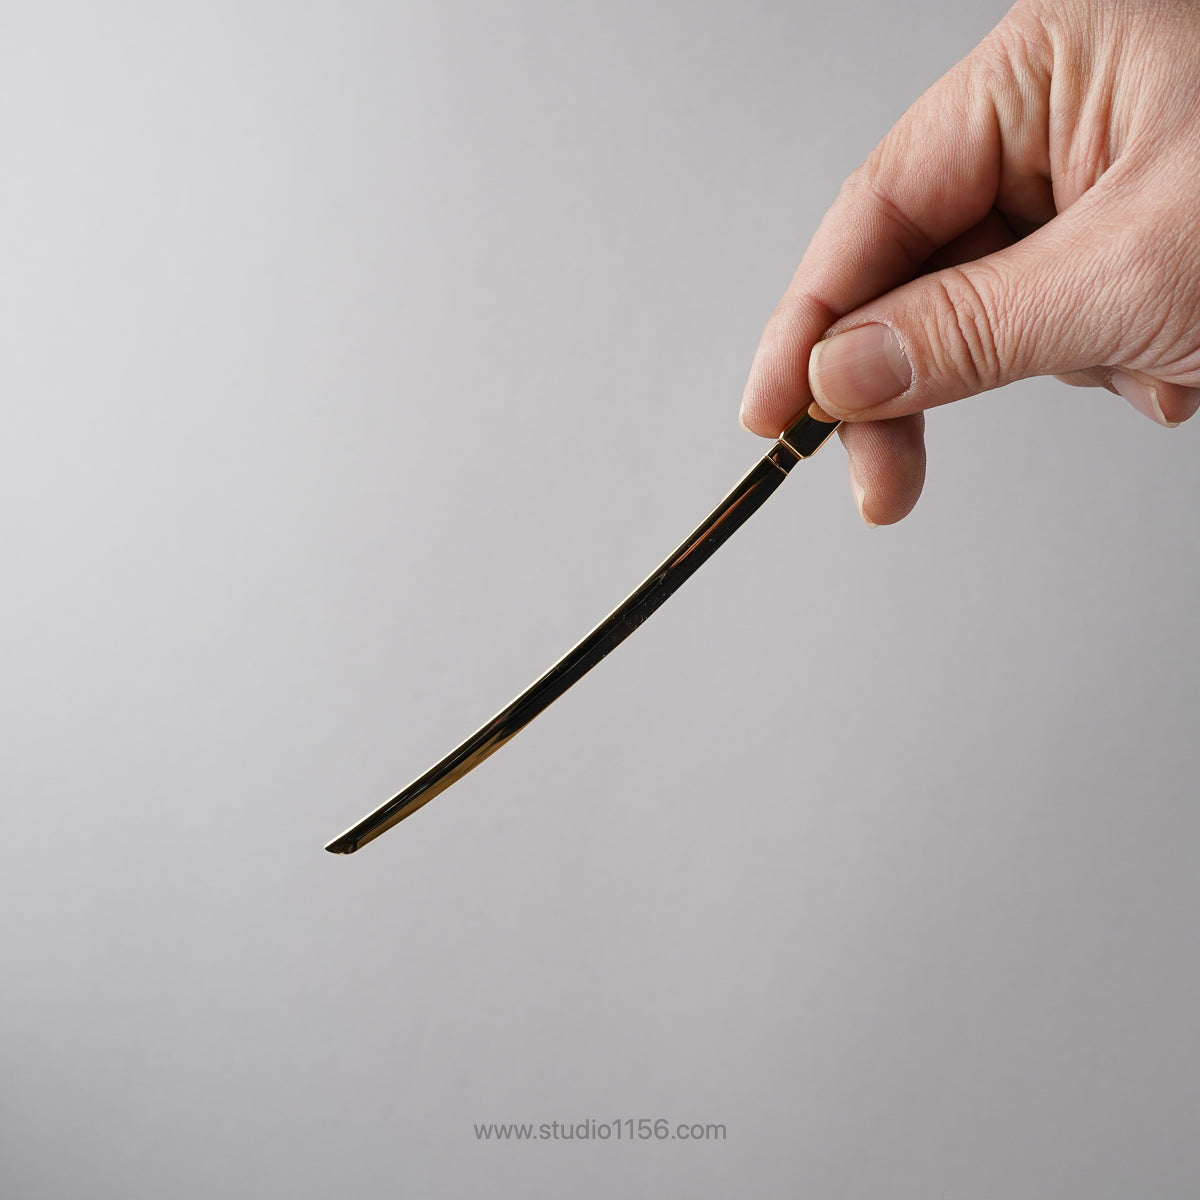 新潟燕カトラリー 日本刀 大太刀 和菓子 ナイフ 16cm [全4種] Todai Studio1156